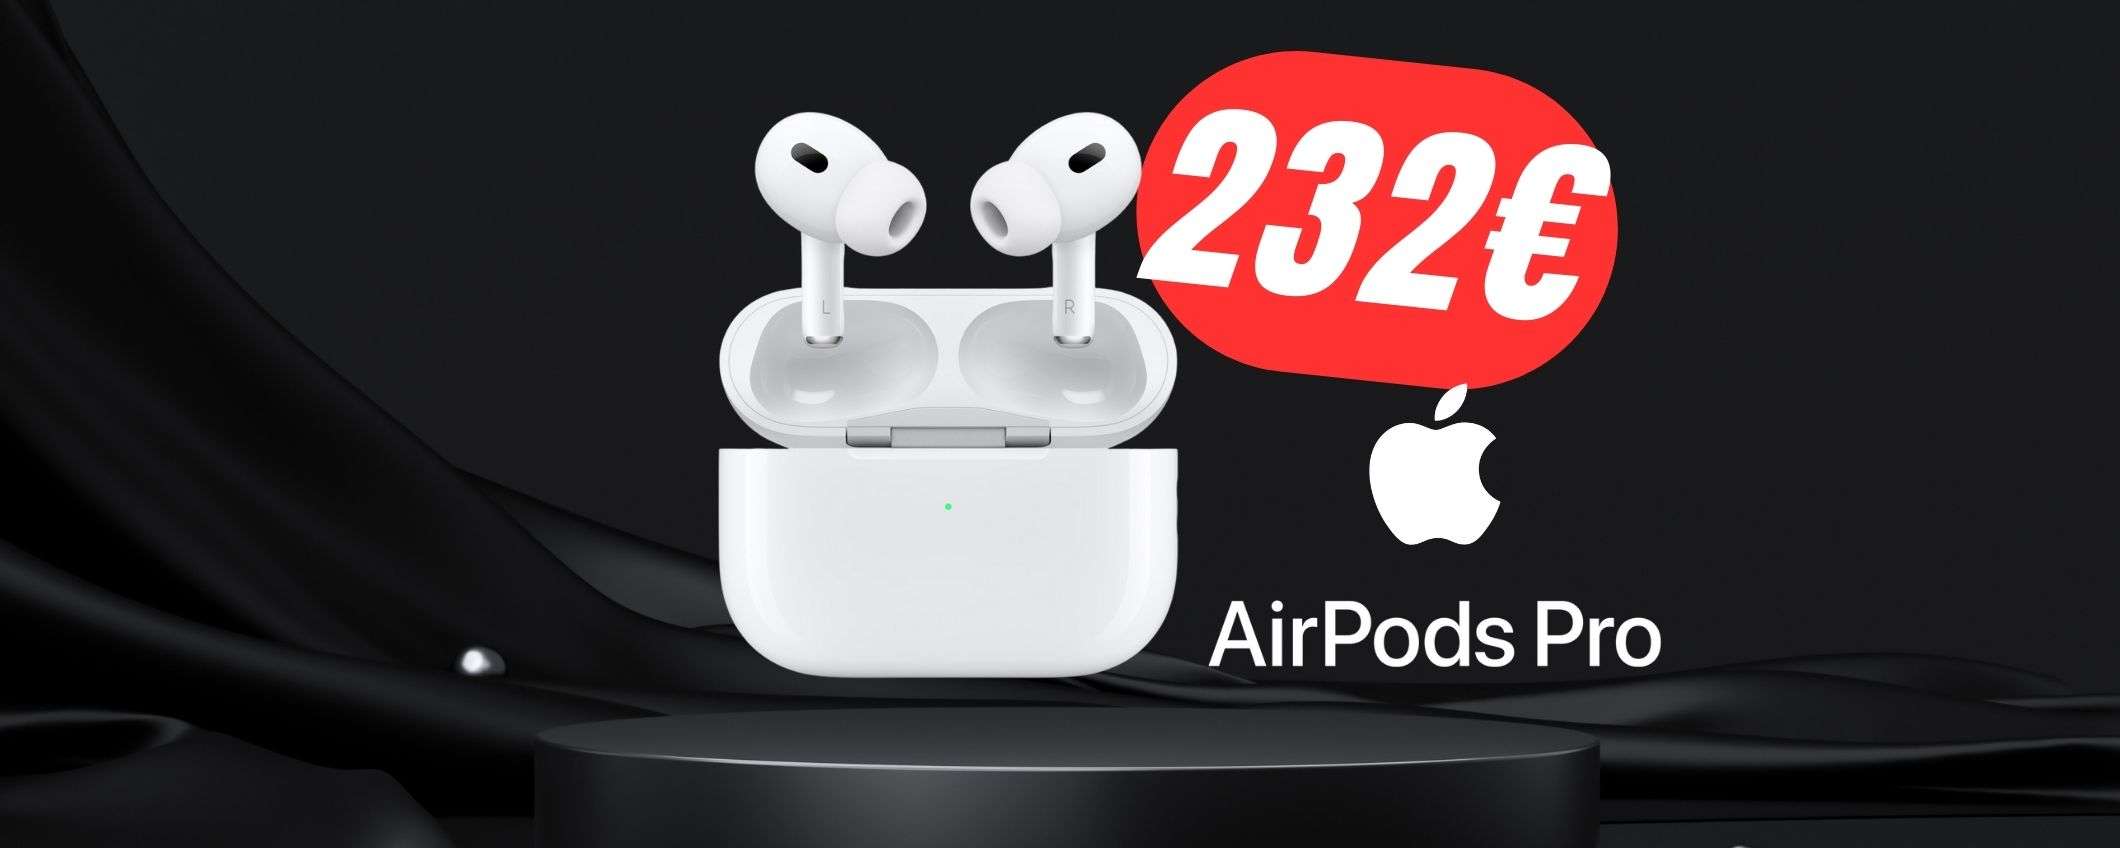 Con questo COUPON pagherai le Apple AirPods Pro 2 solo 232€!